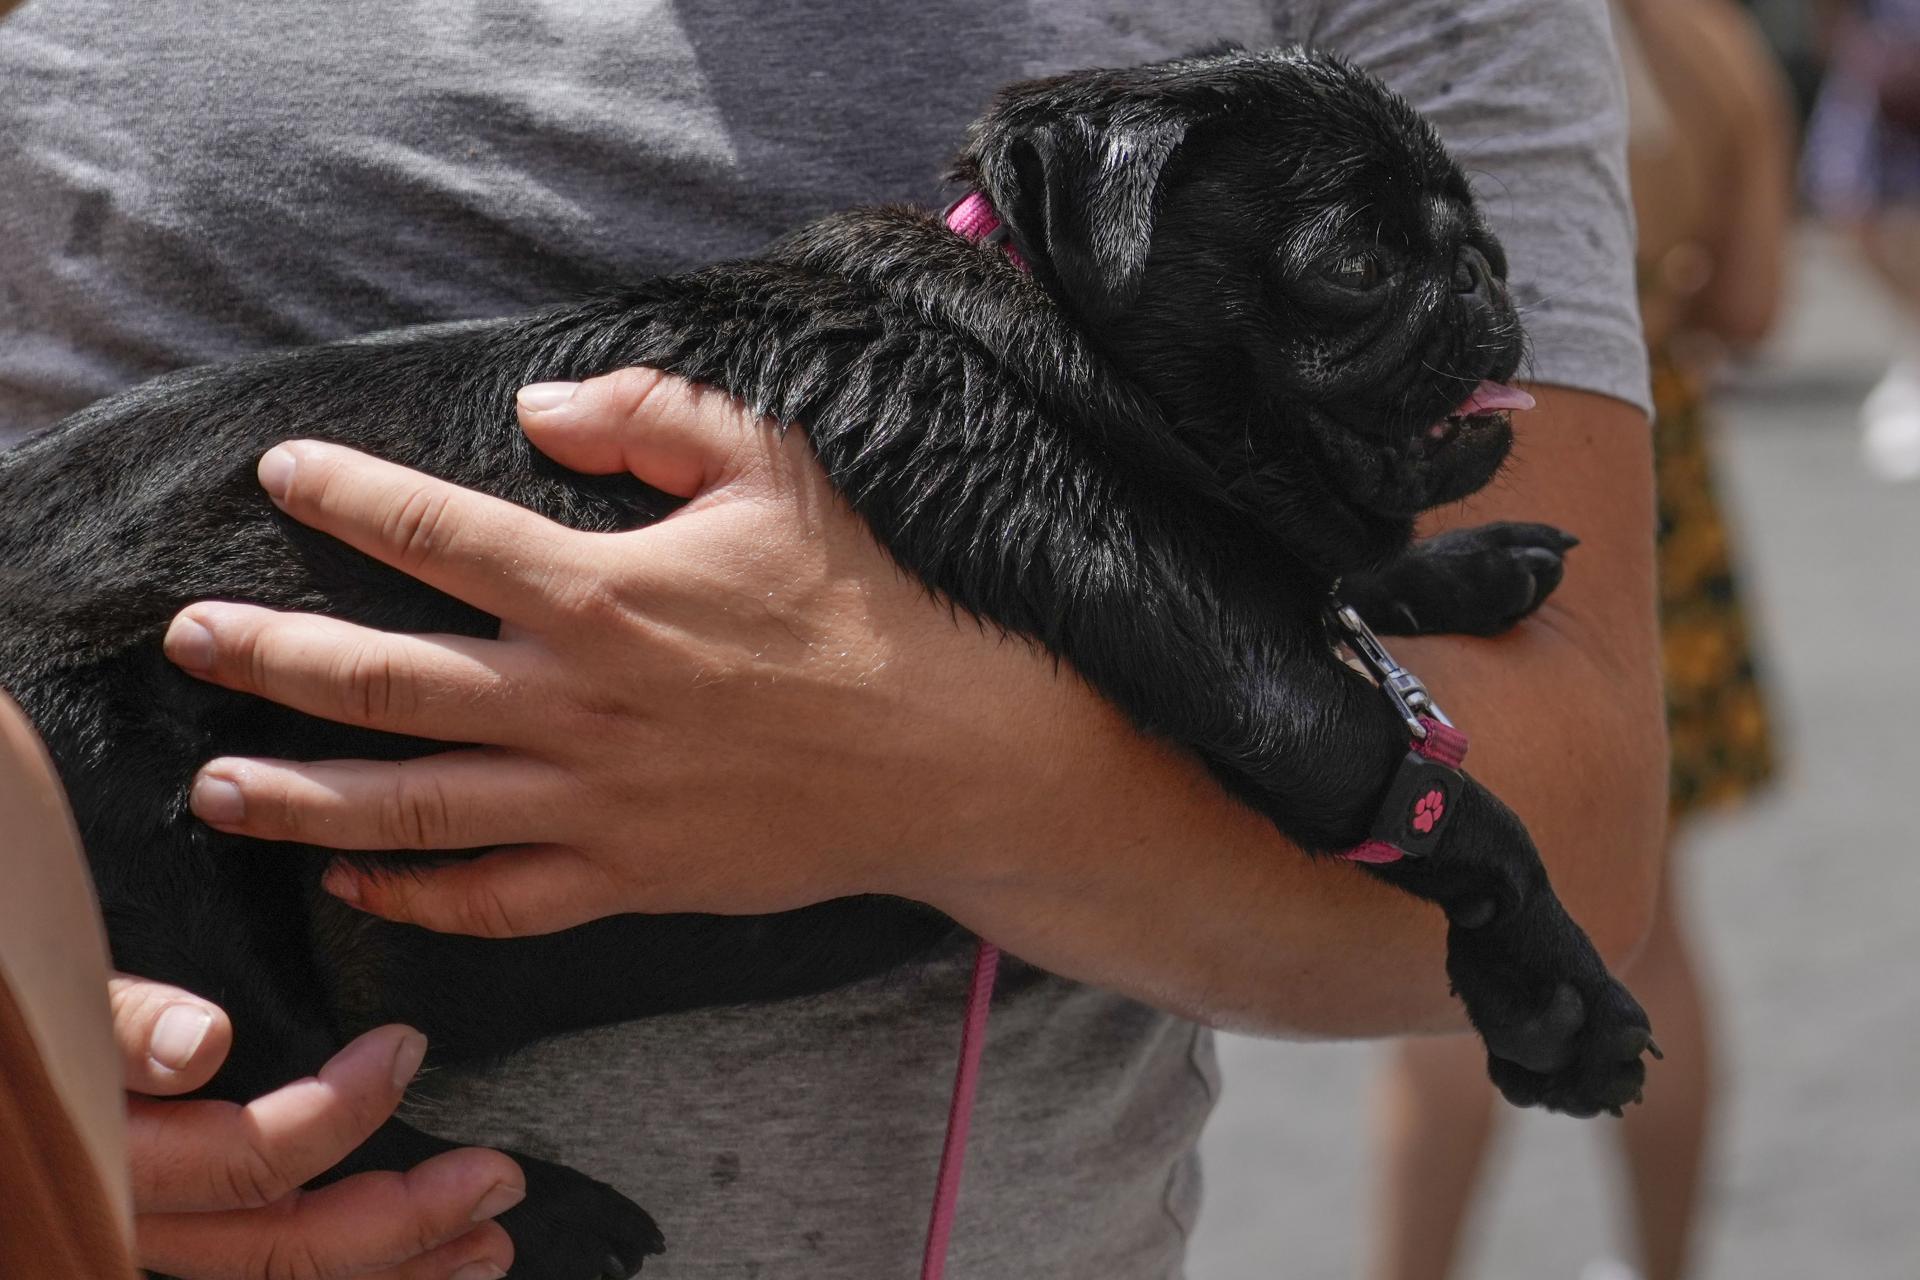 Francúzske mesto začína bojovať proti psím výkalom, majitelia budú musieť nosiť genetický pas